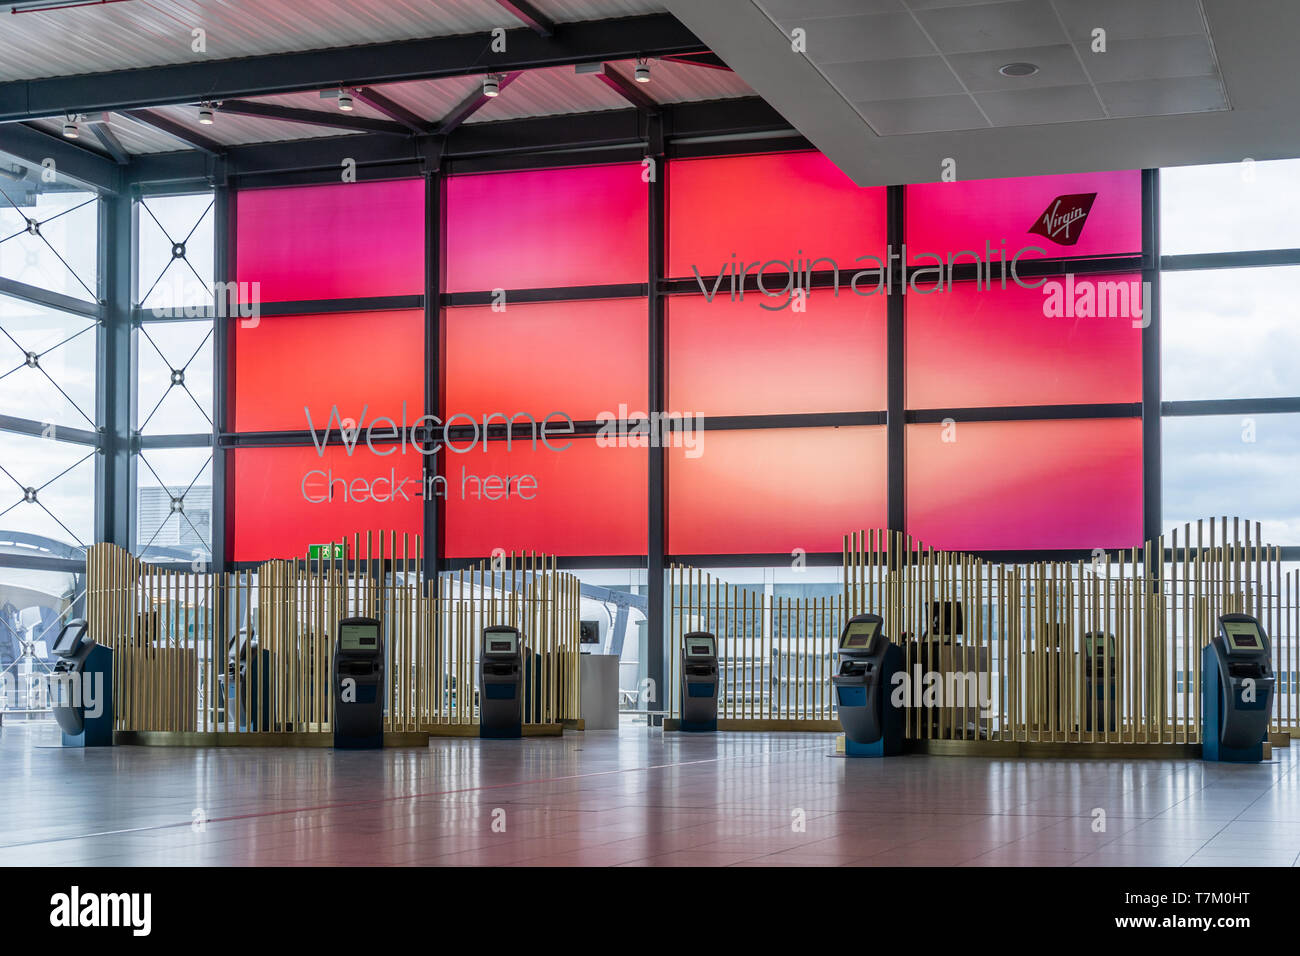 La vérification automatique de la zone pour la compagnie aérienne Virgin Atlantic à l'aéroport de Gatwick, England, UK Banque D'Images